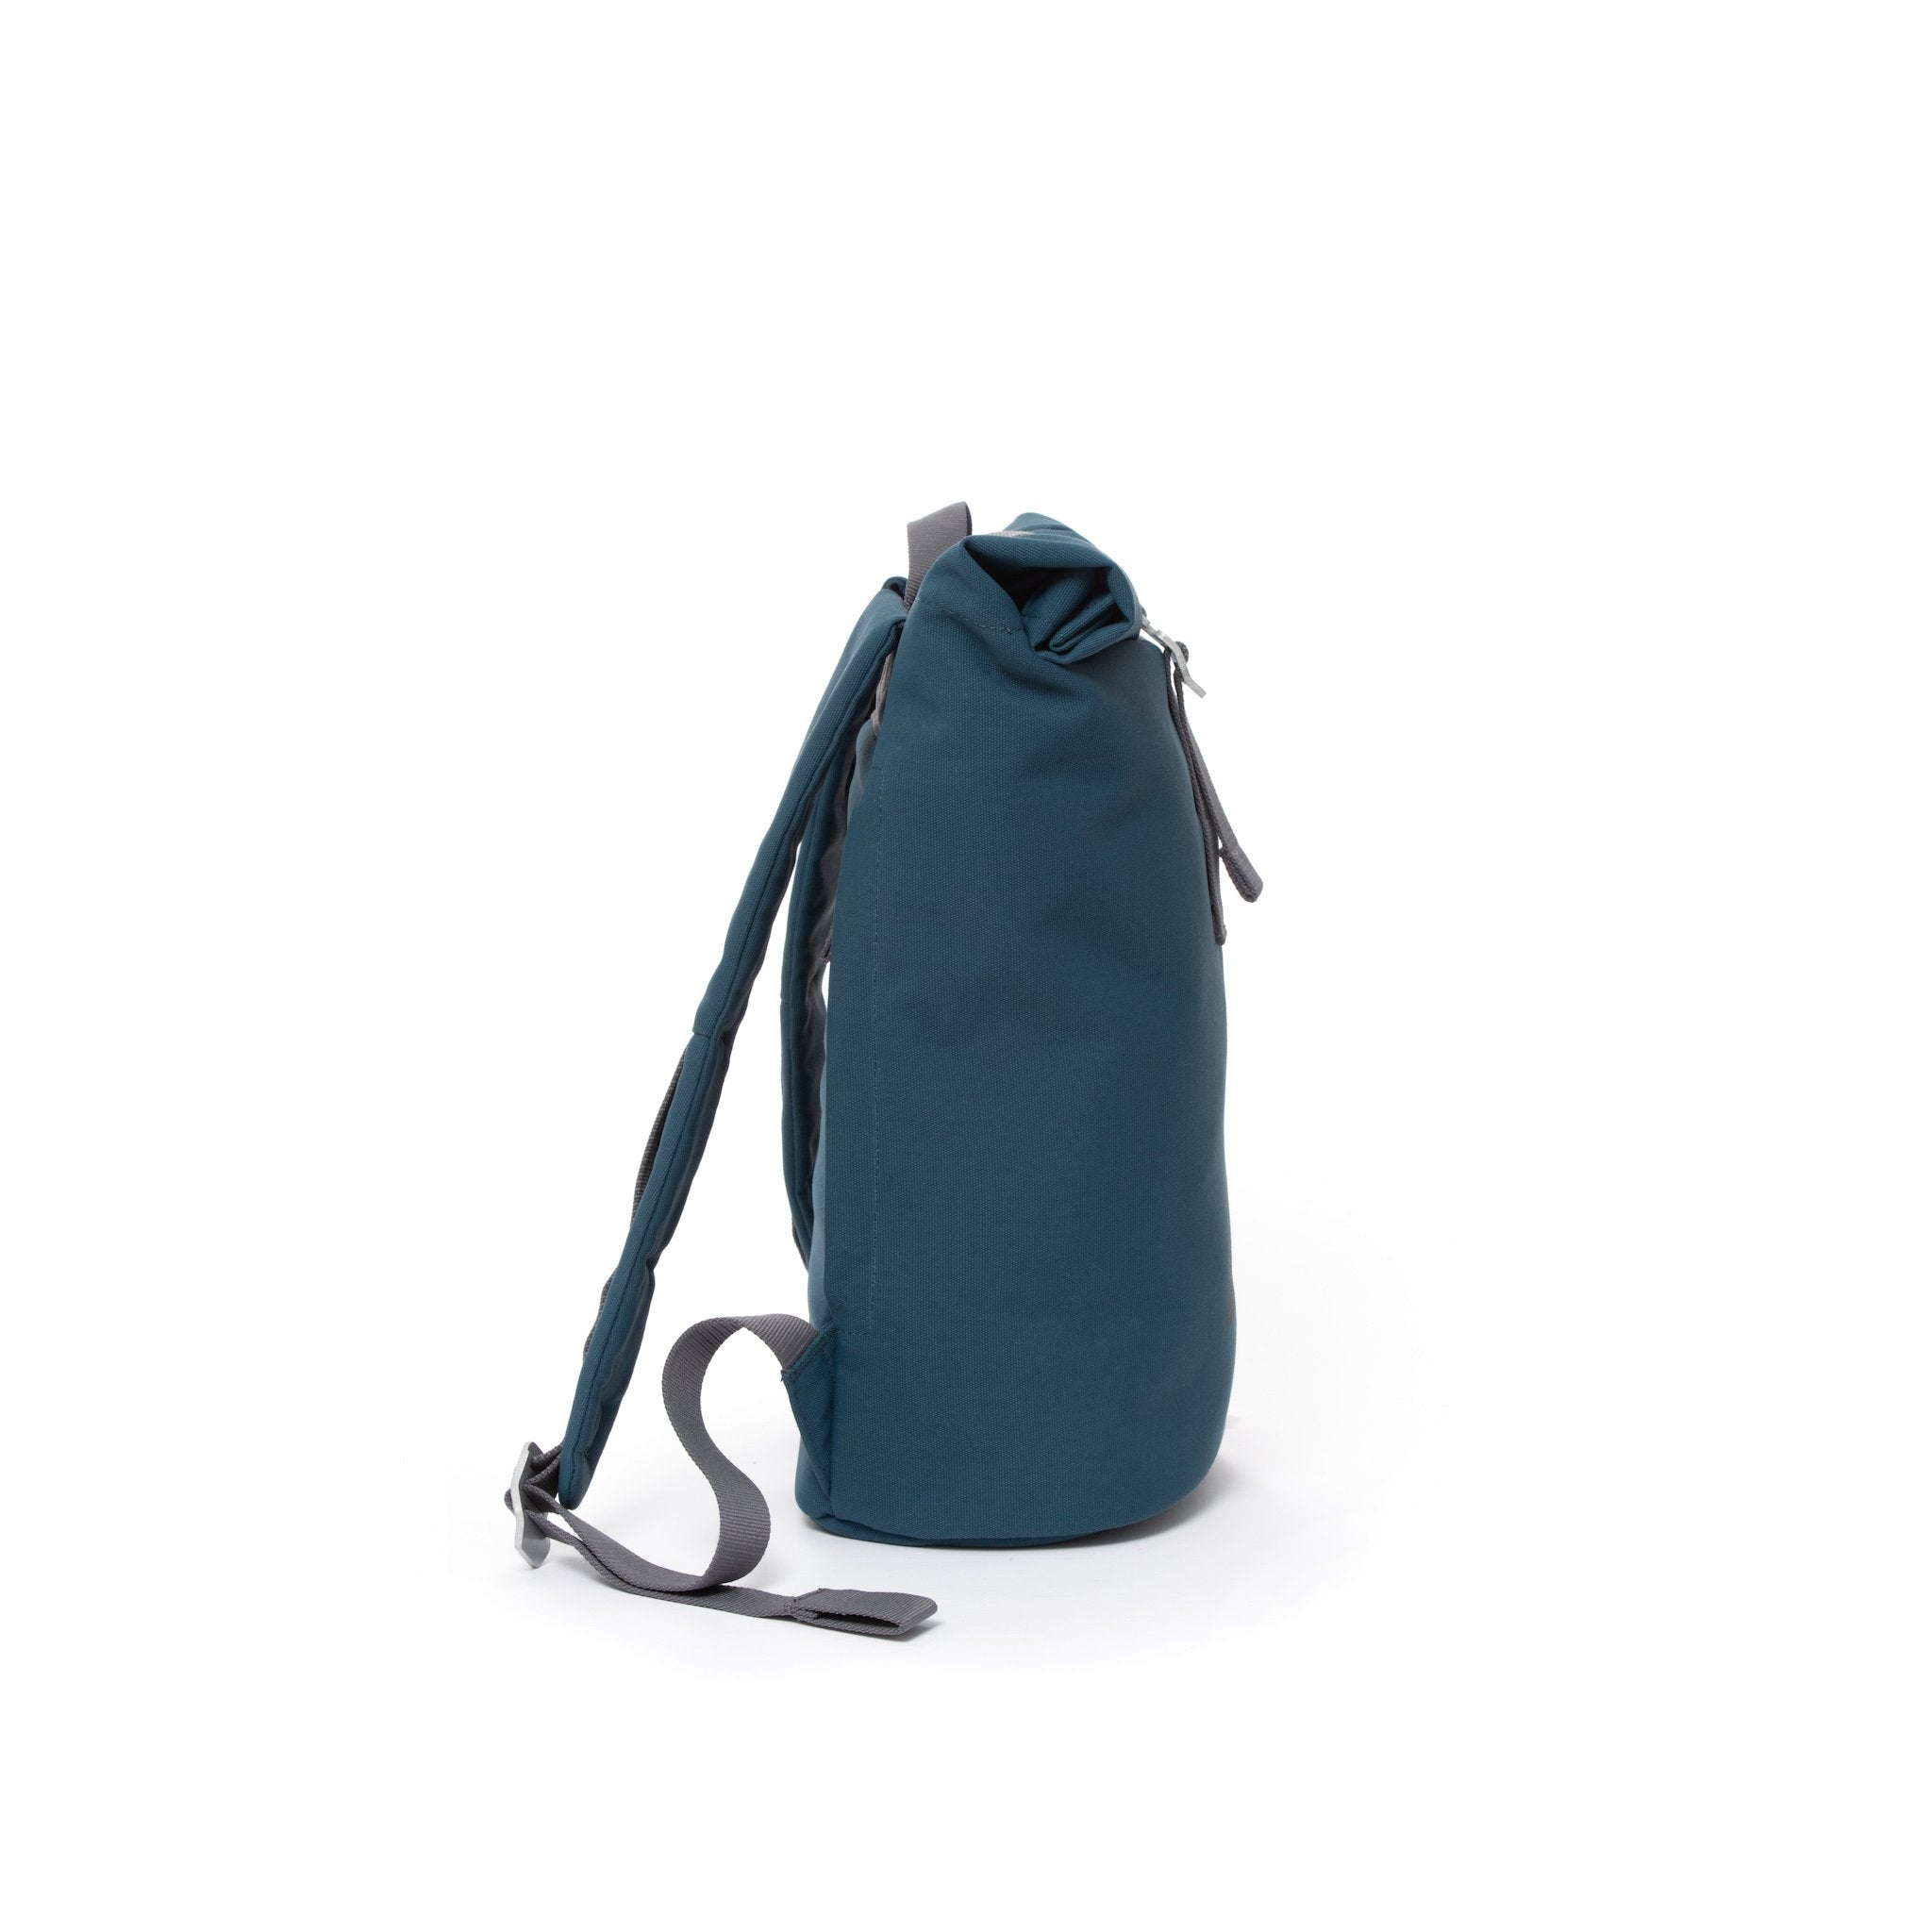 Blue waterproof canvas women’s rolltop backpack.